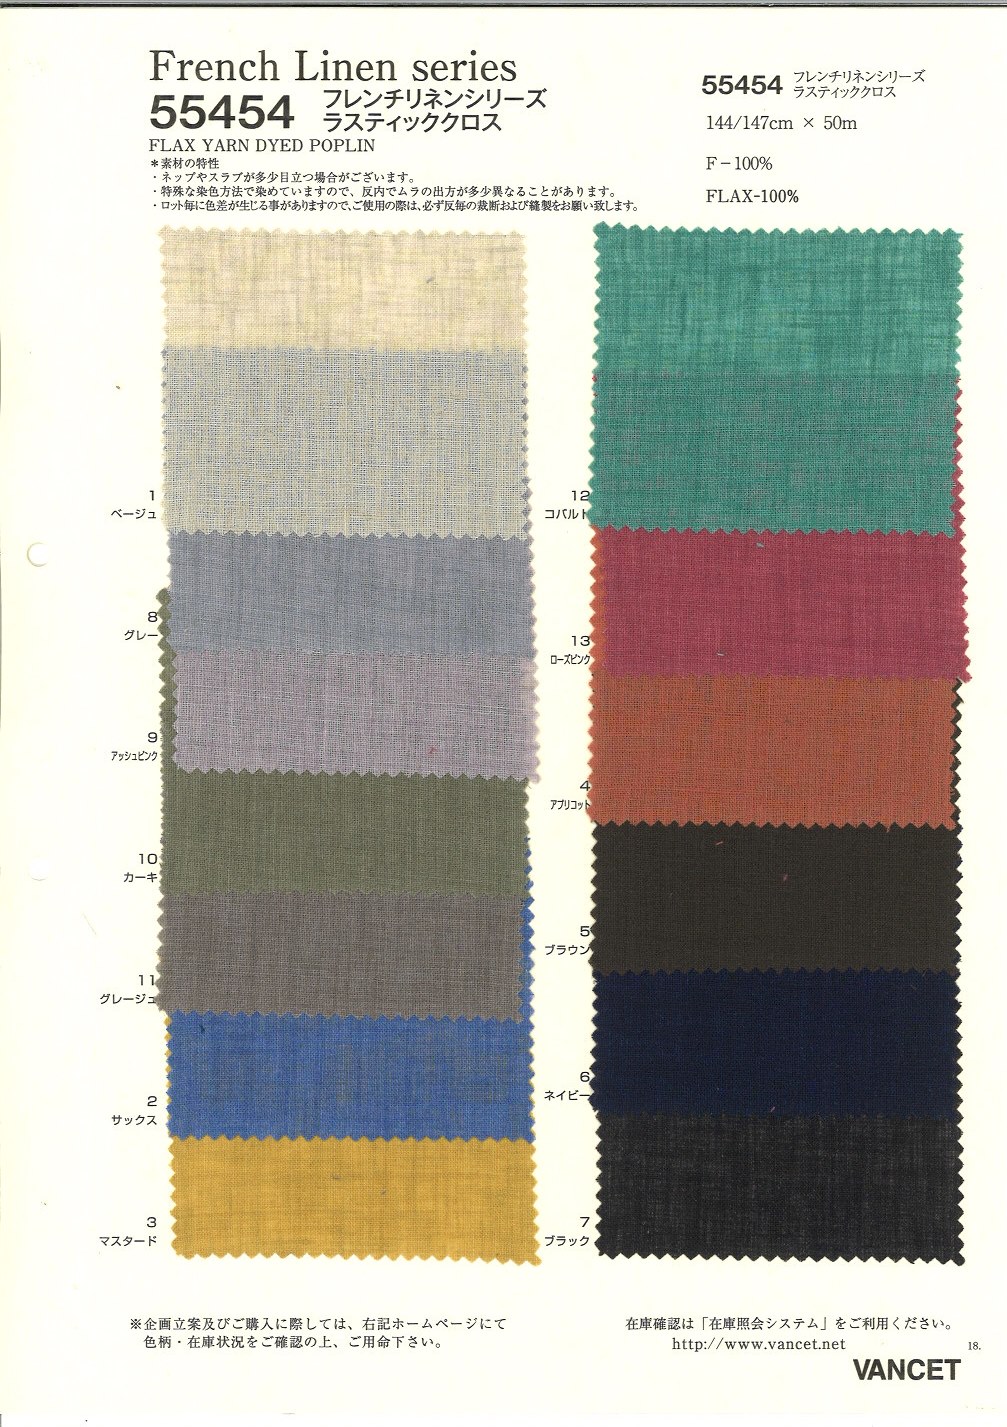 55454 Pano Rústico Da Série De Linho Francês[Têxtil / Tecido] VANCET